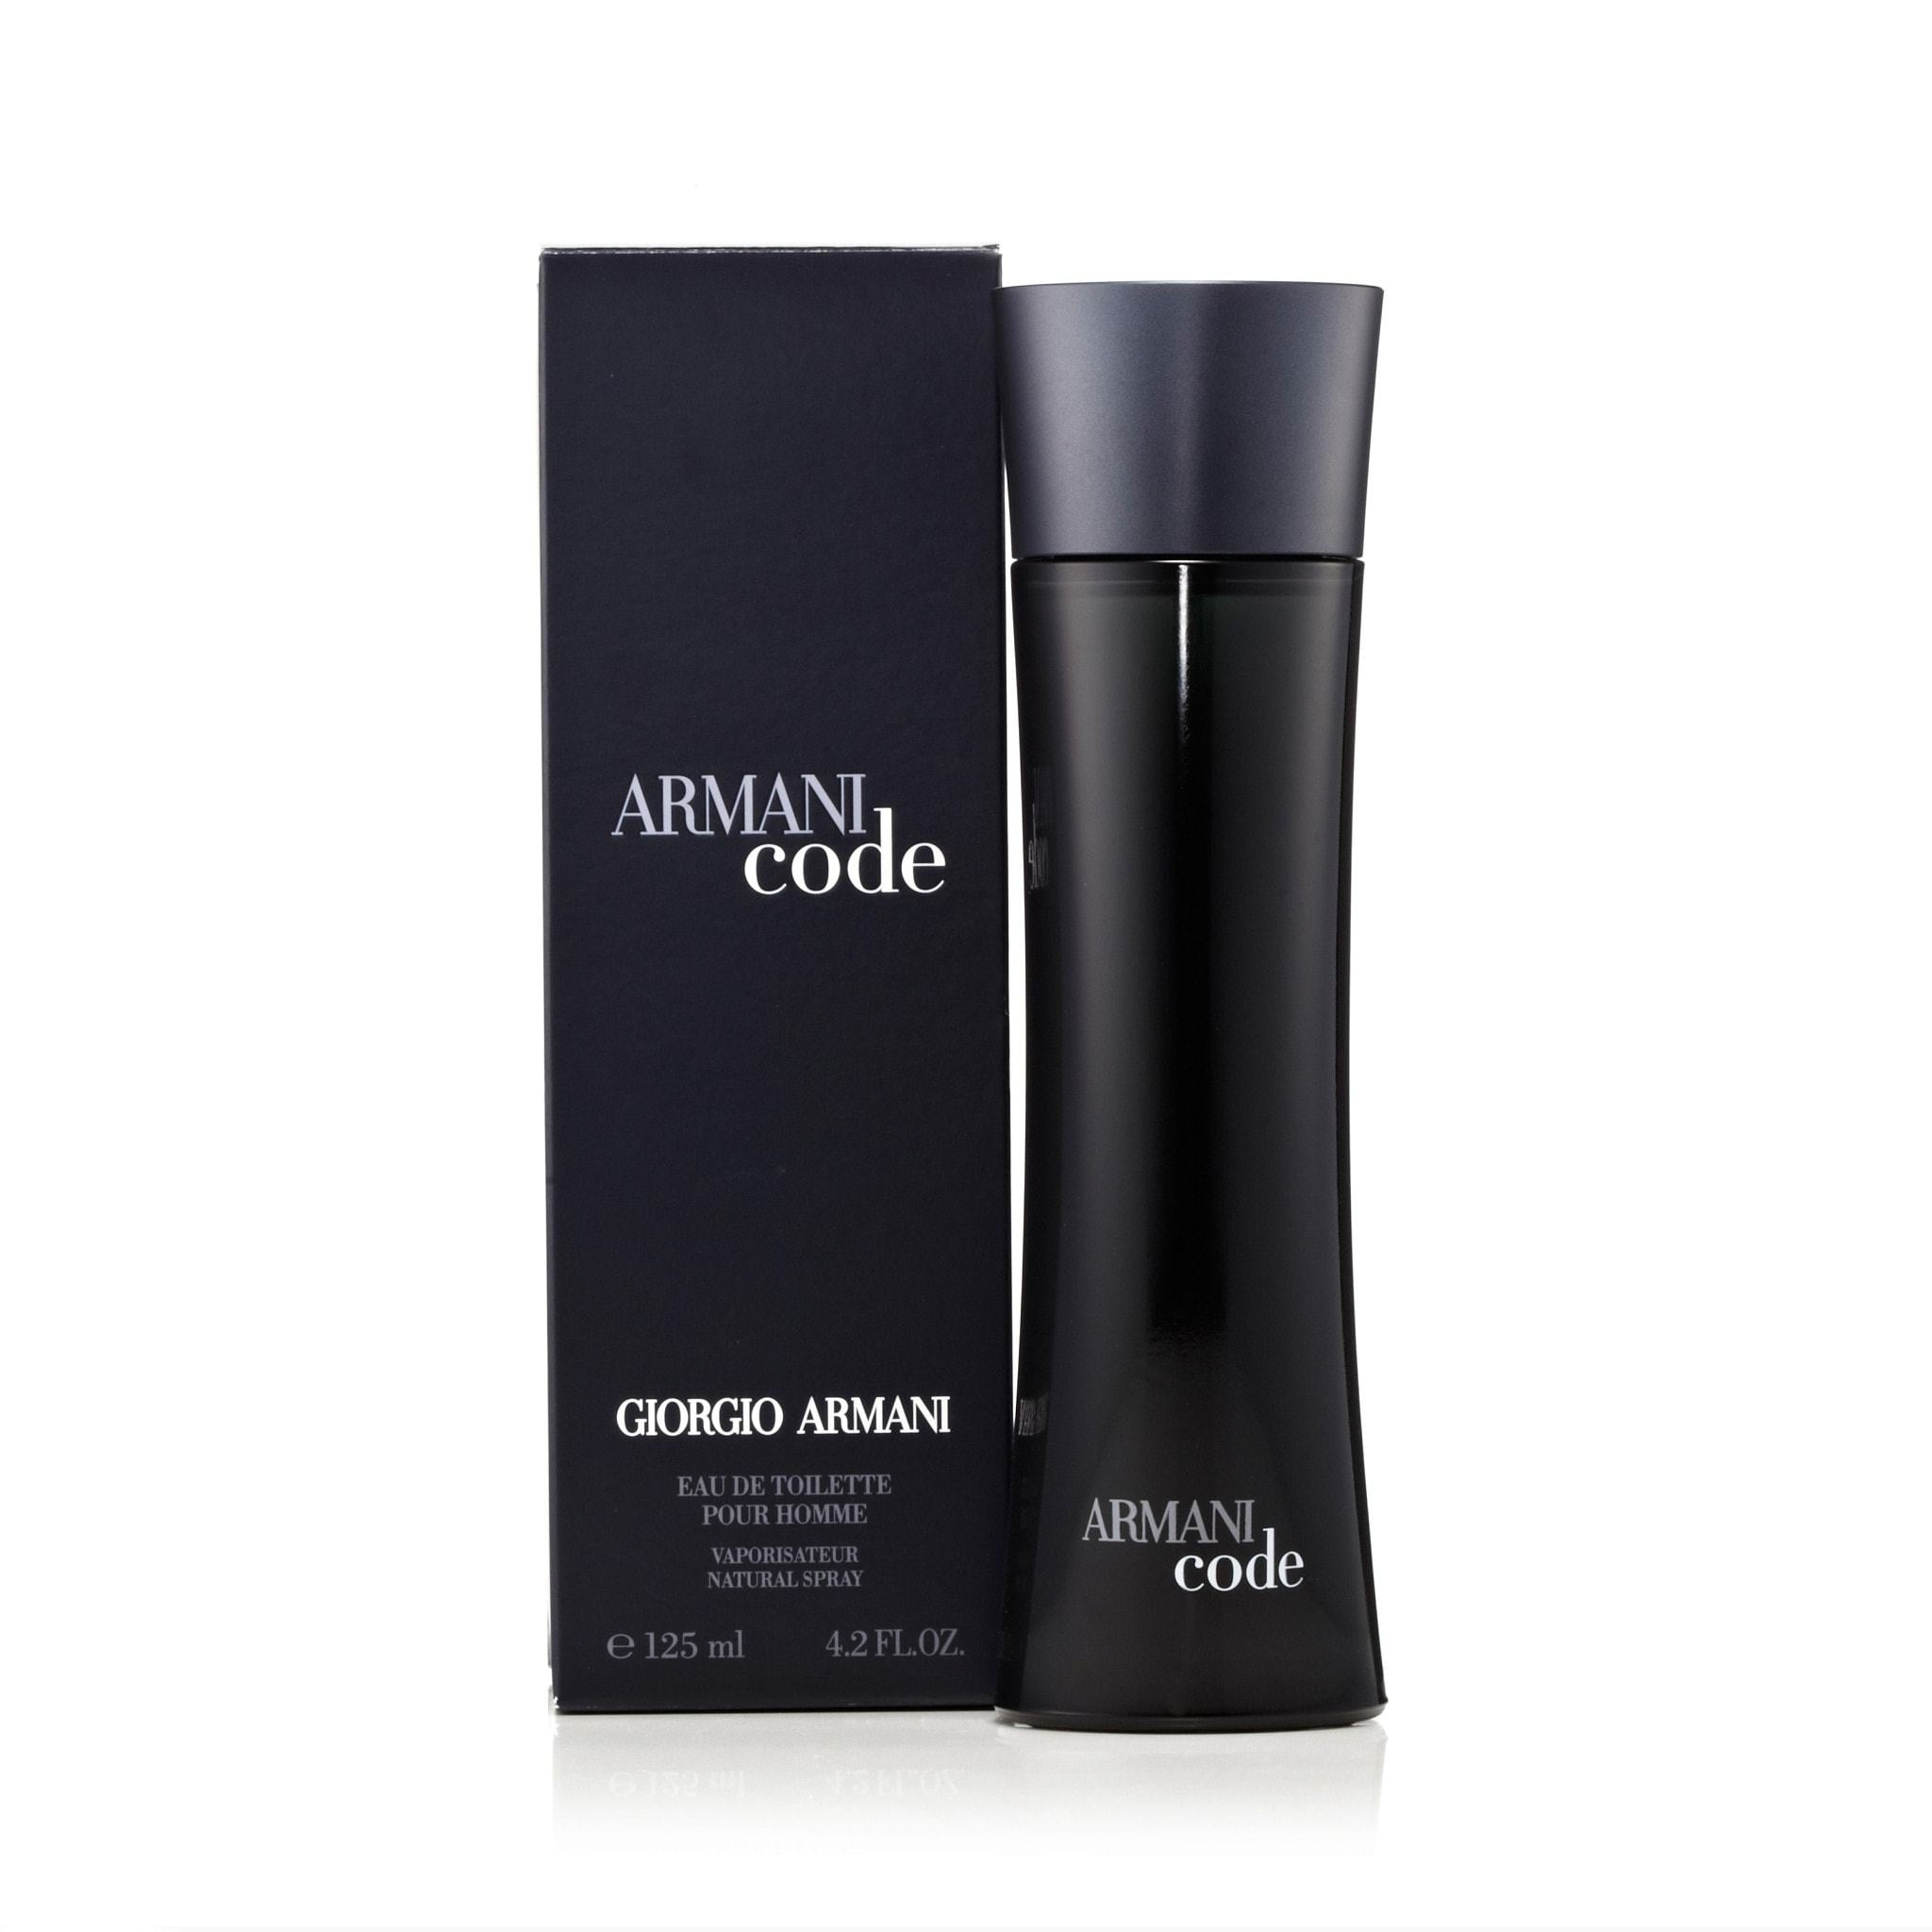 armani code parfum 100 ml Off 68% canerofset.com